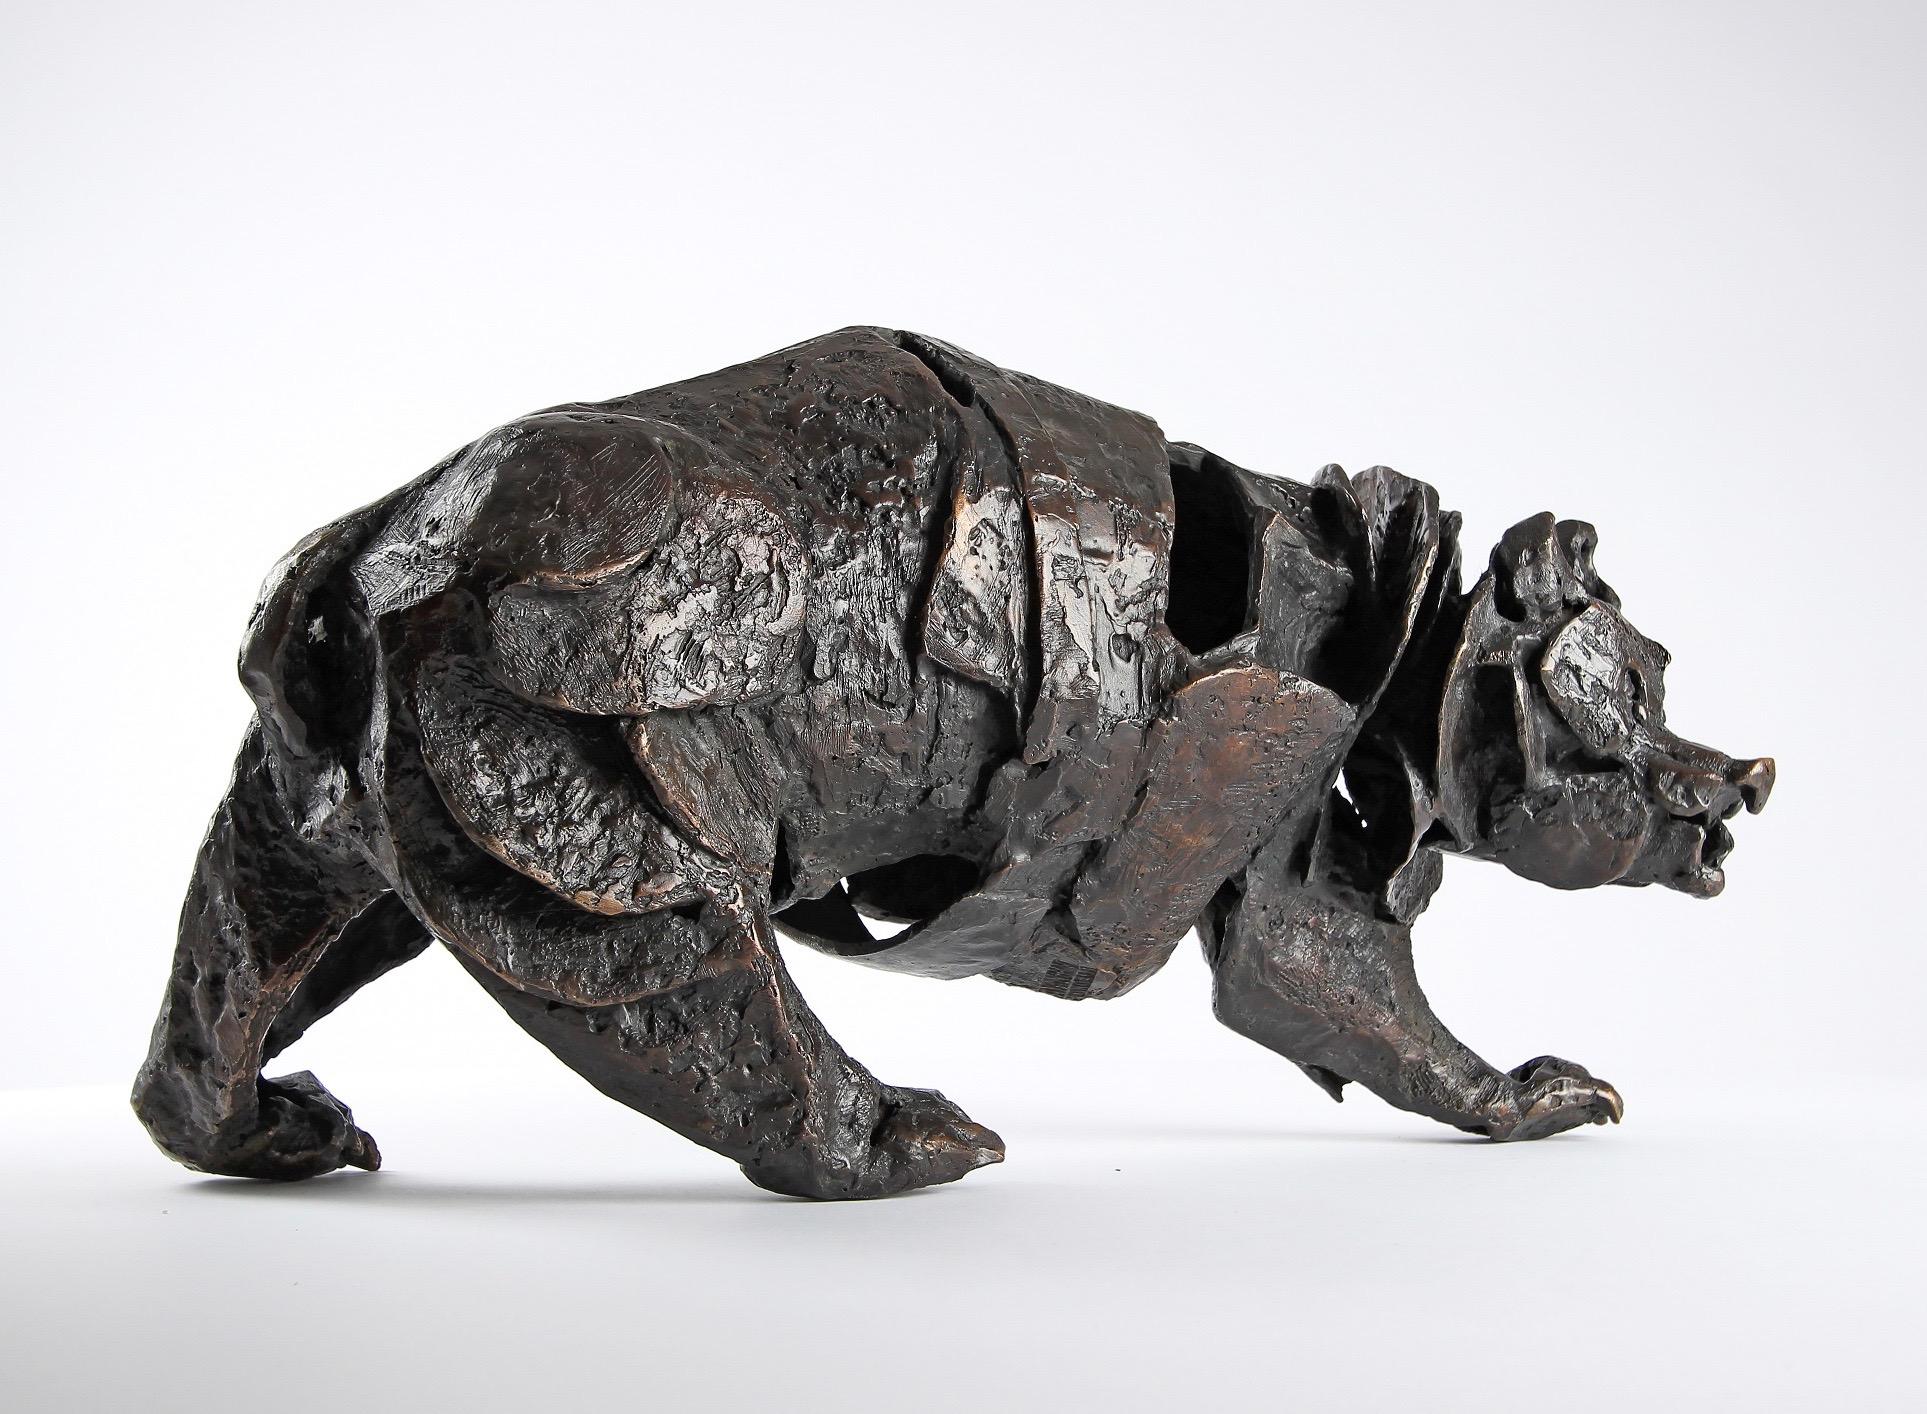 Chésade Figurative Sculpture - Assembly Bear - Contemporary bronze sculpture of a bear